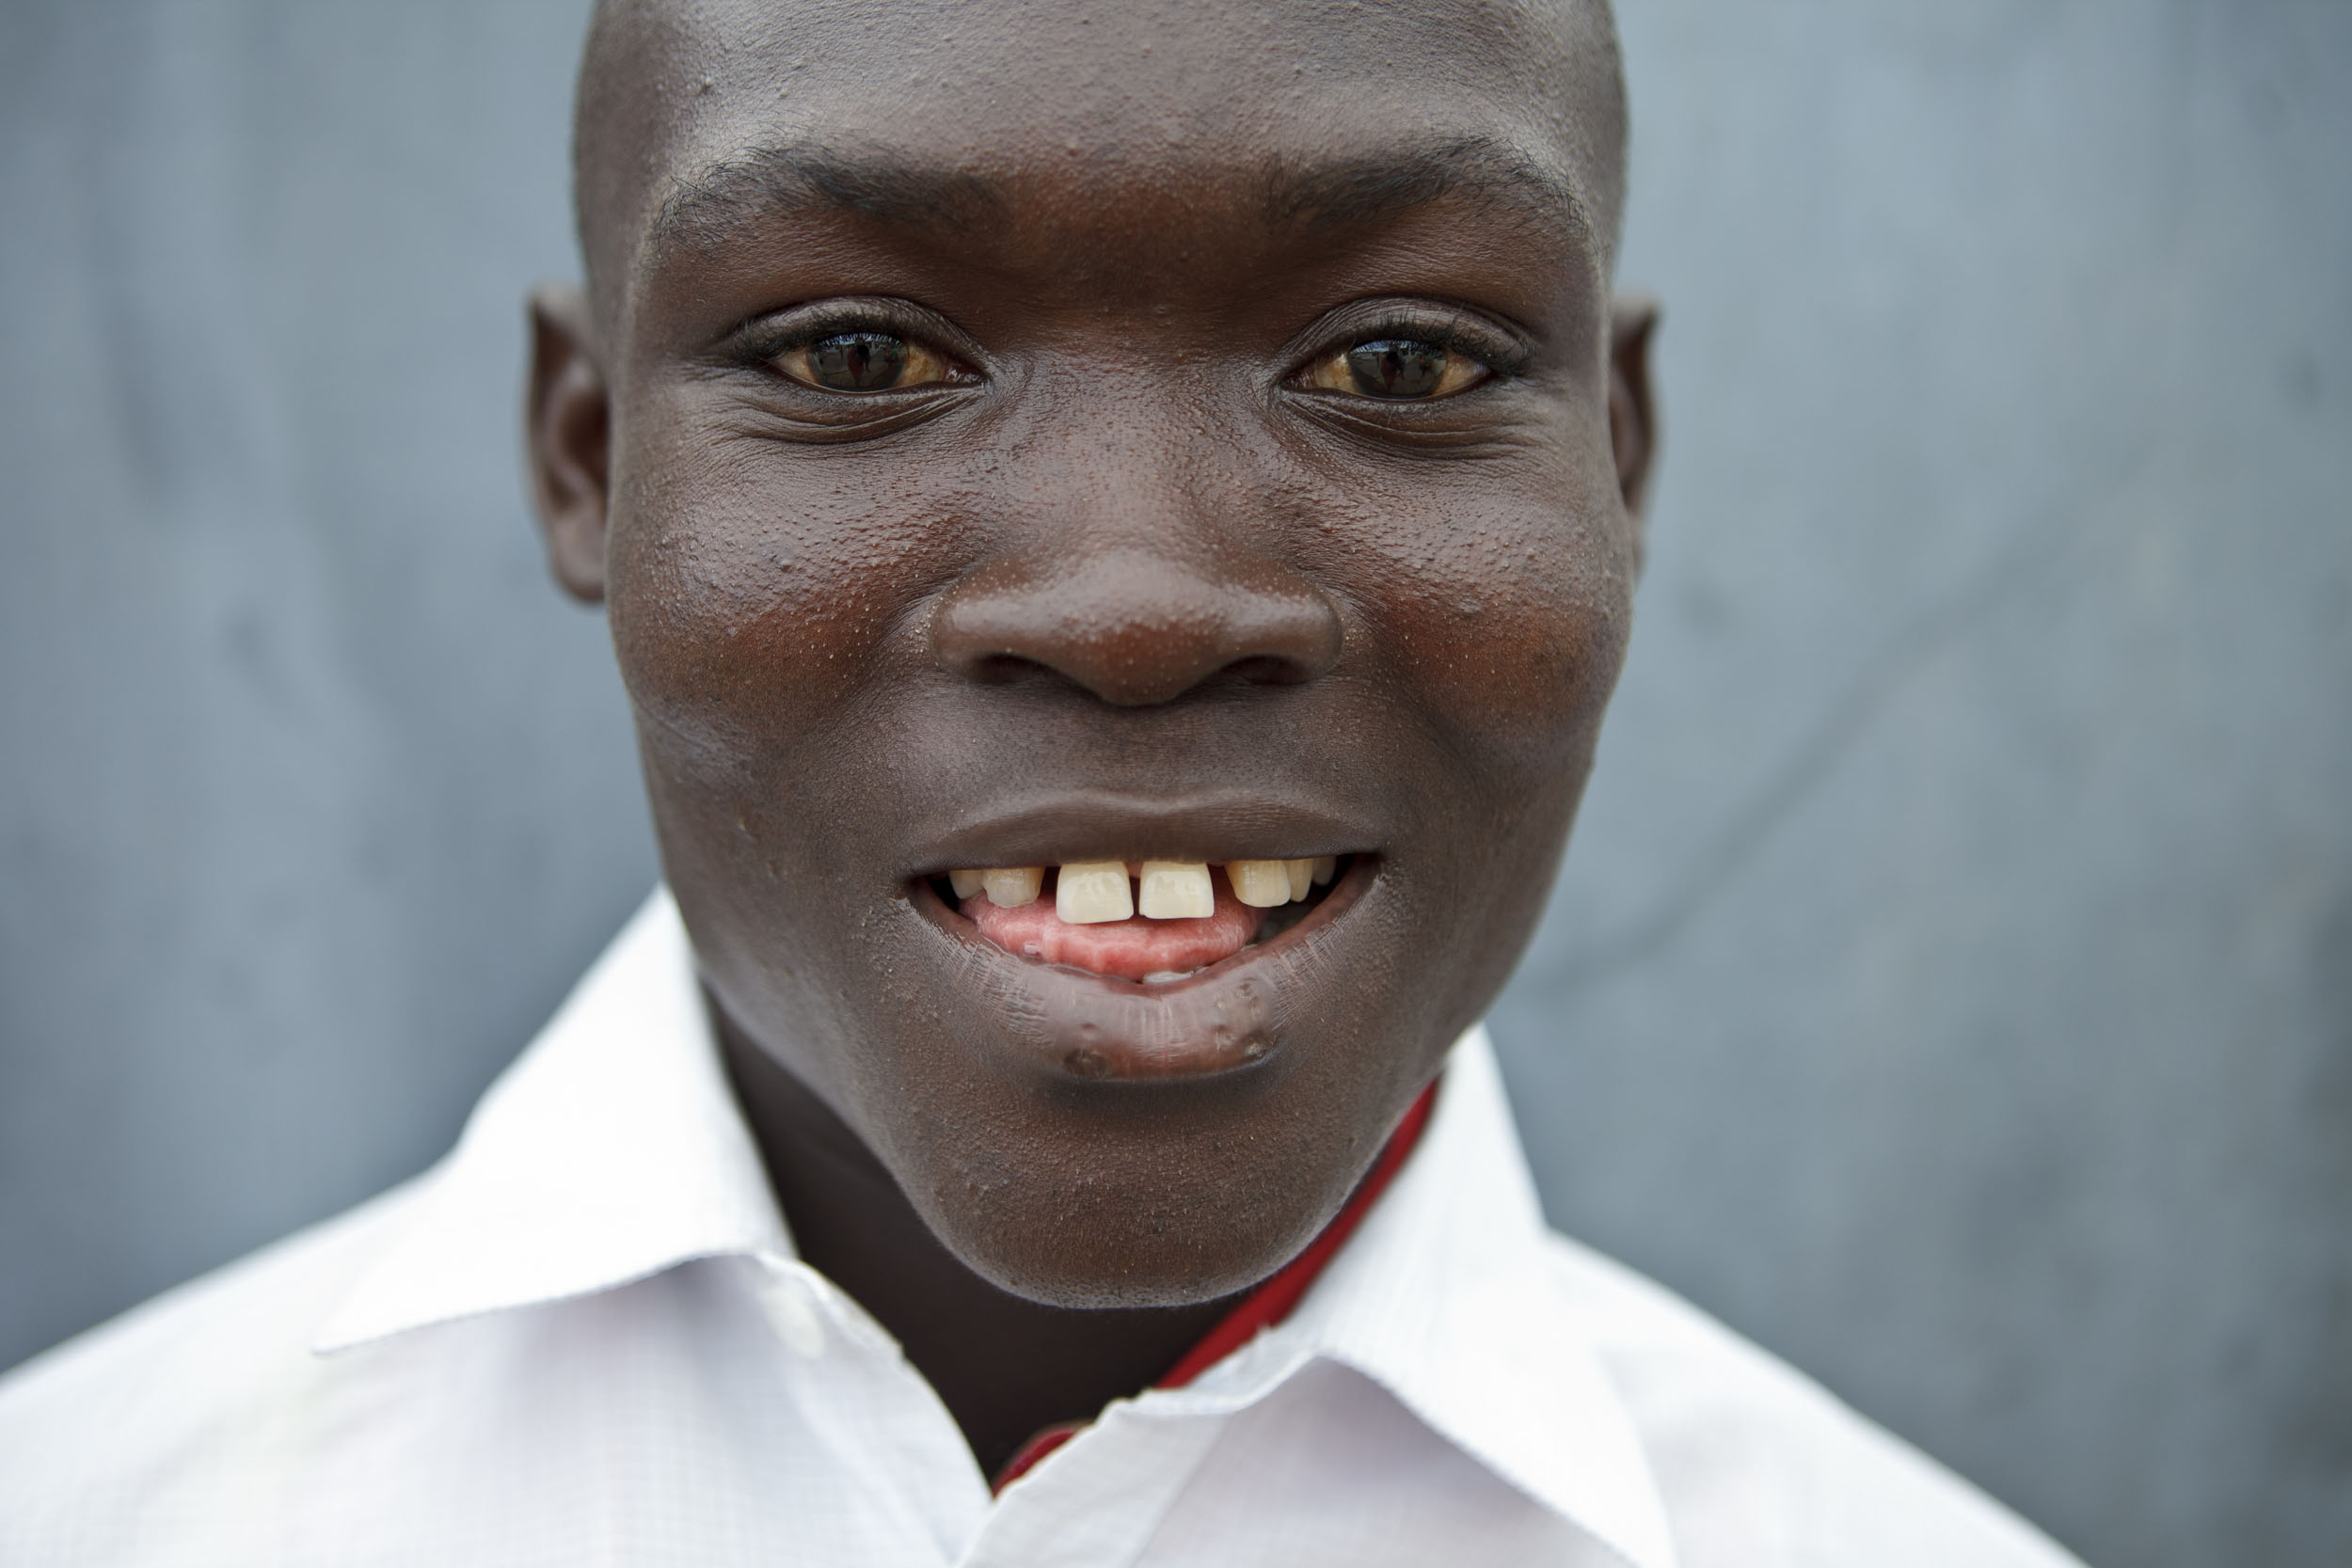 Portrait d'un jeune garçon en Côte d'Ivoire. Reportage commandé par la marque  Nescafé® du Groupe Nestlé®. Photo de portrait en gros plan réalisée en lumière naturelle.